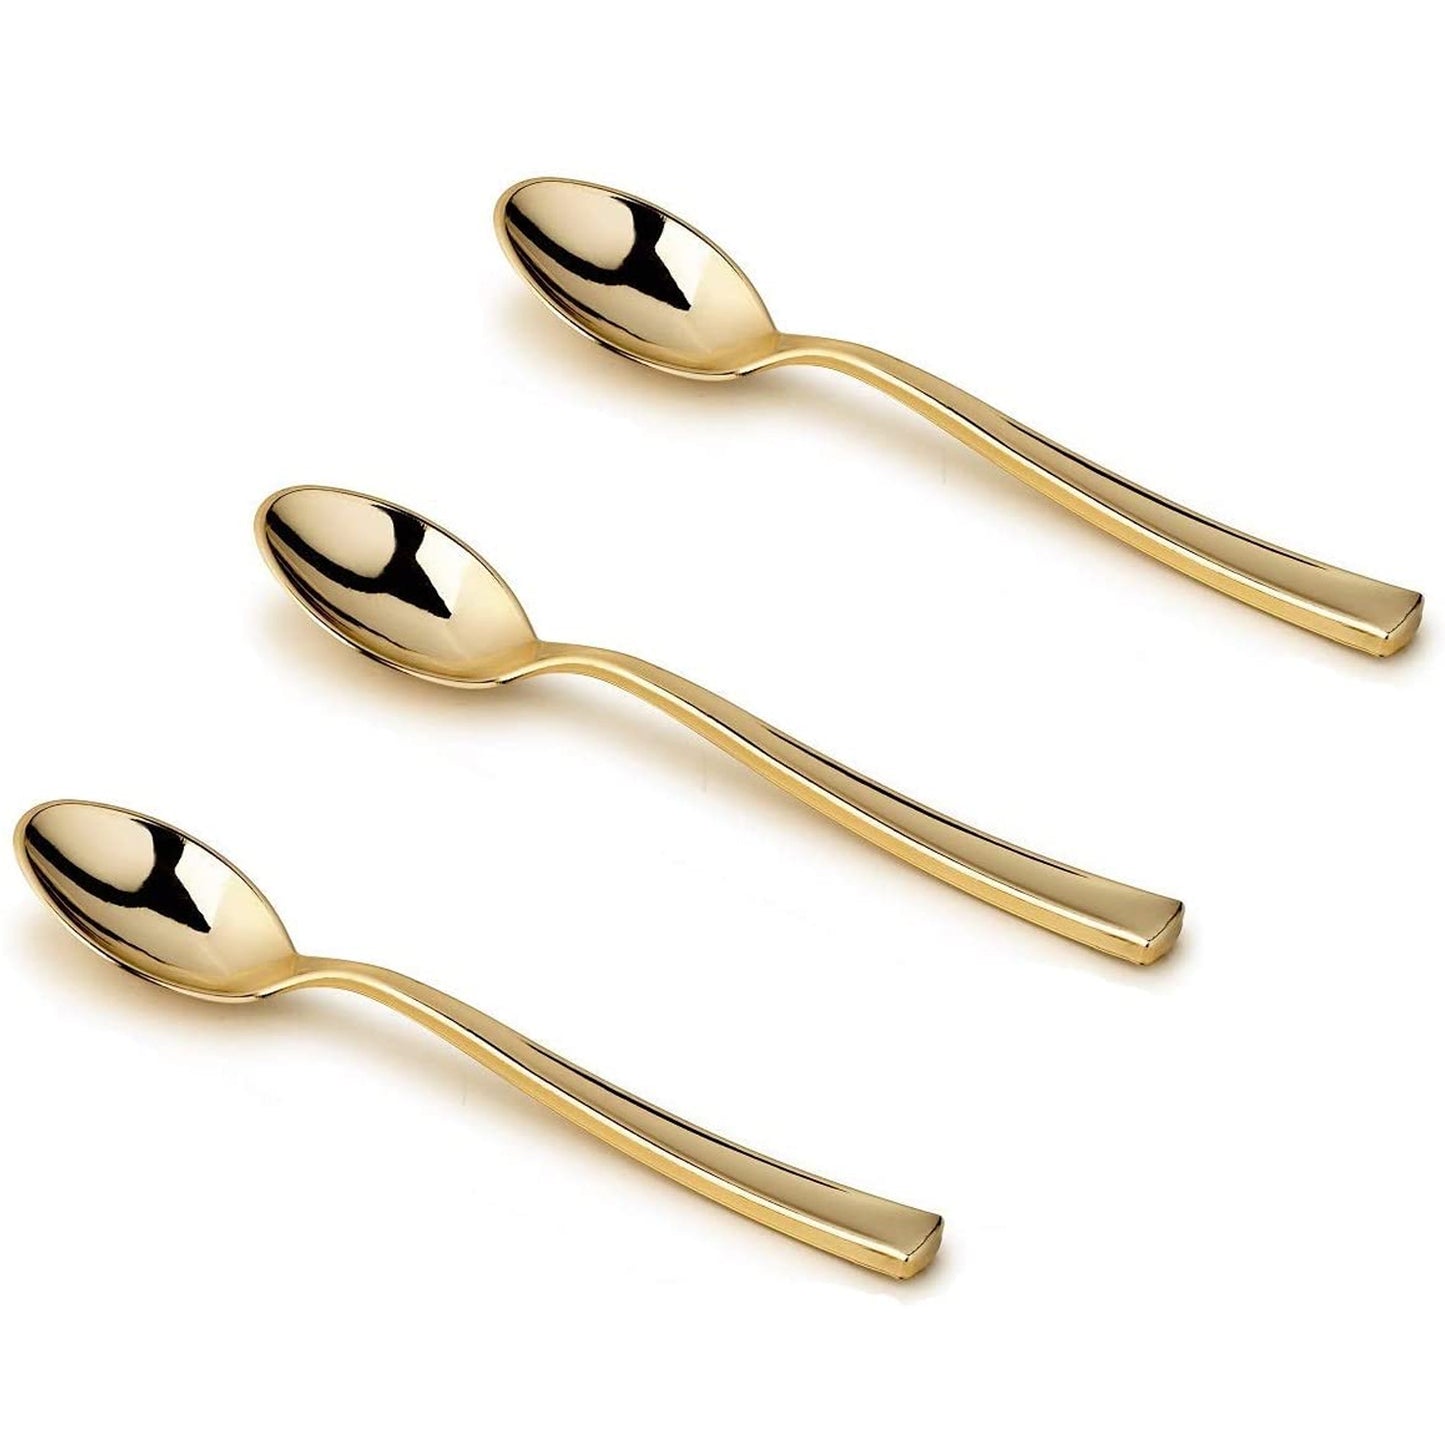 Gold Mini Plastic Spoons 4.5" Serverware Decorline   